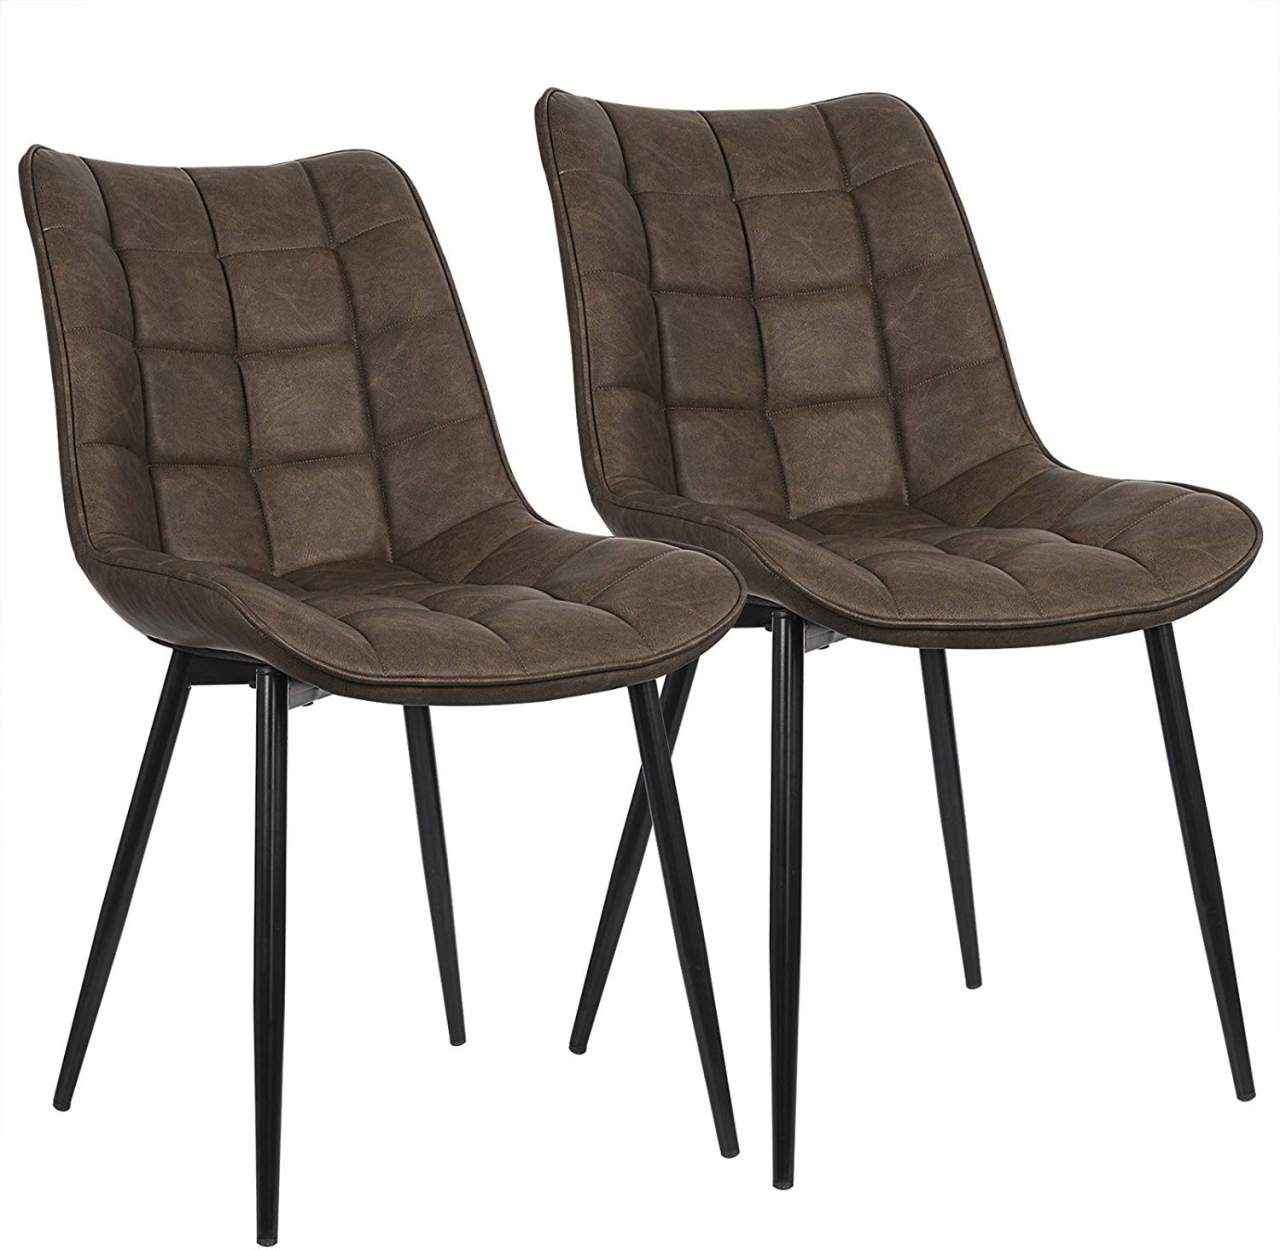 Metallbeine Sitzfläche Rückenlehne, aus Esszimmerstühle Kunstleder, 2er-Set mit